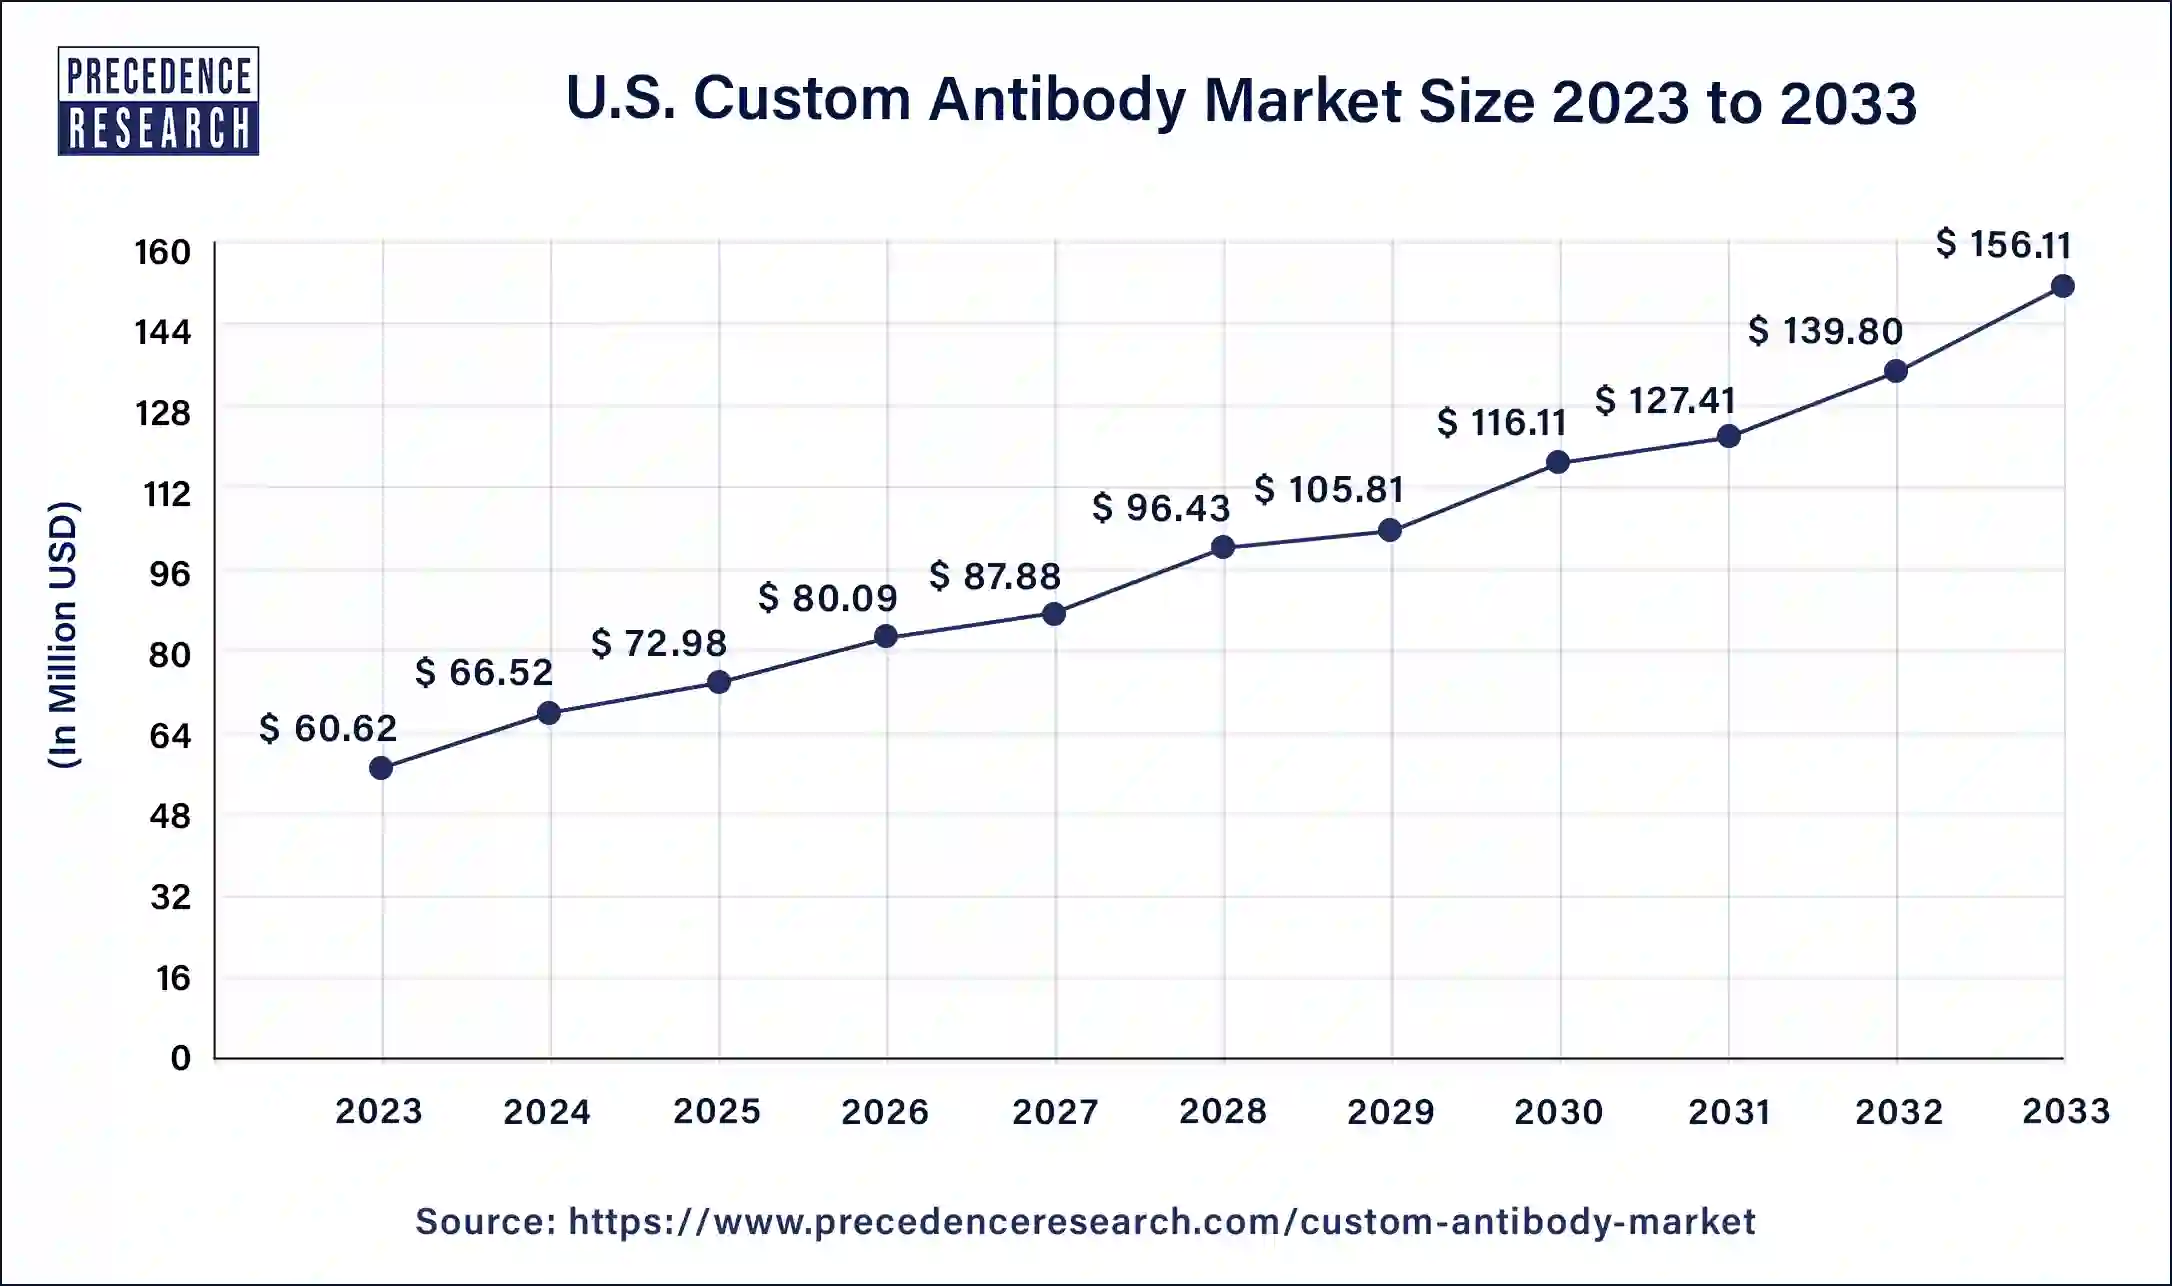 U.S. Custom Antibody Market Size 2024 to 2033